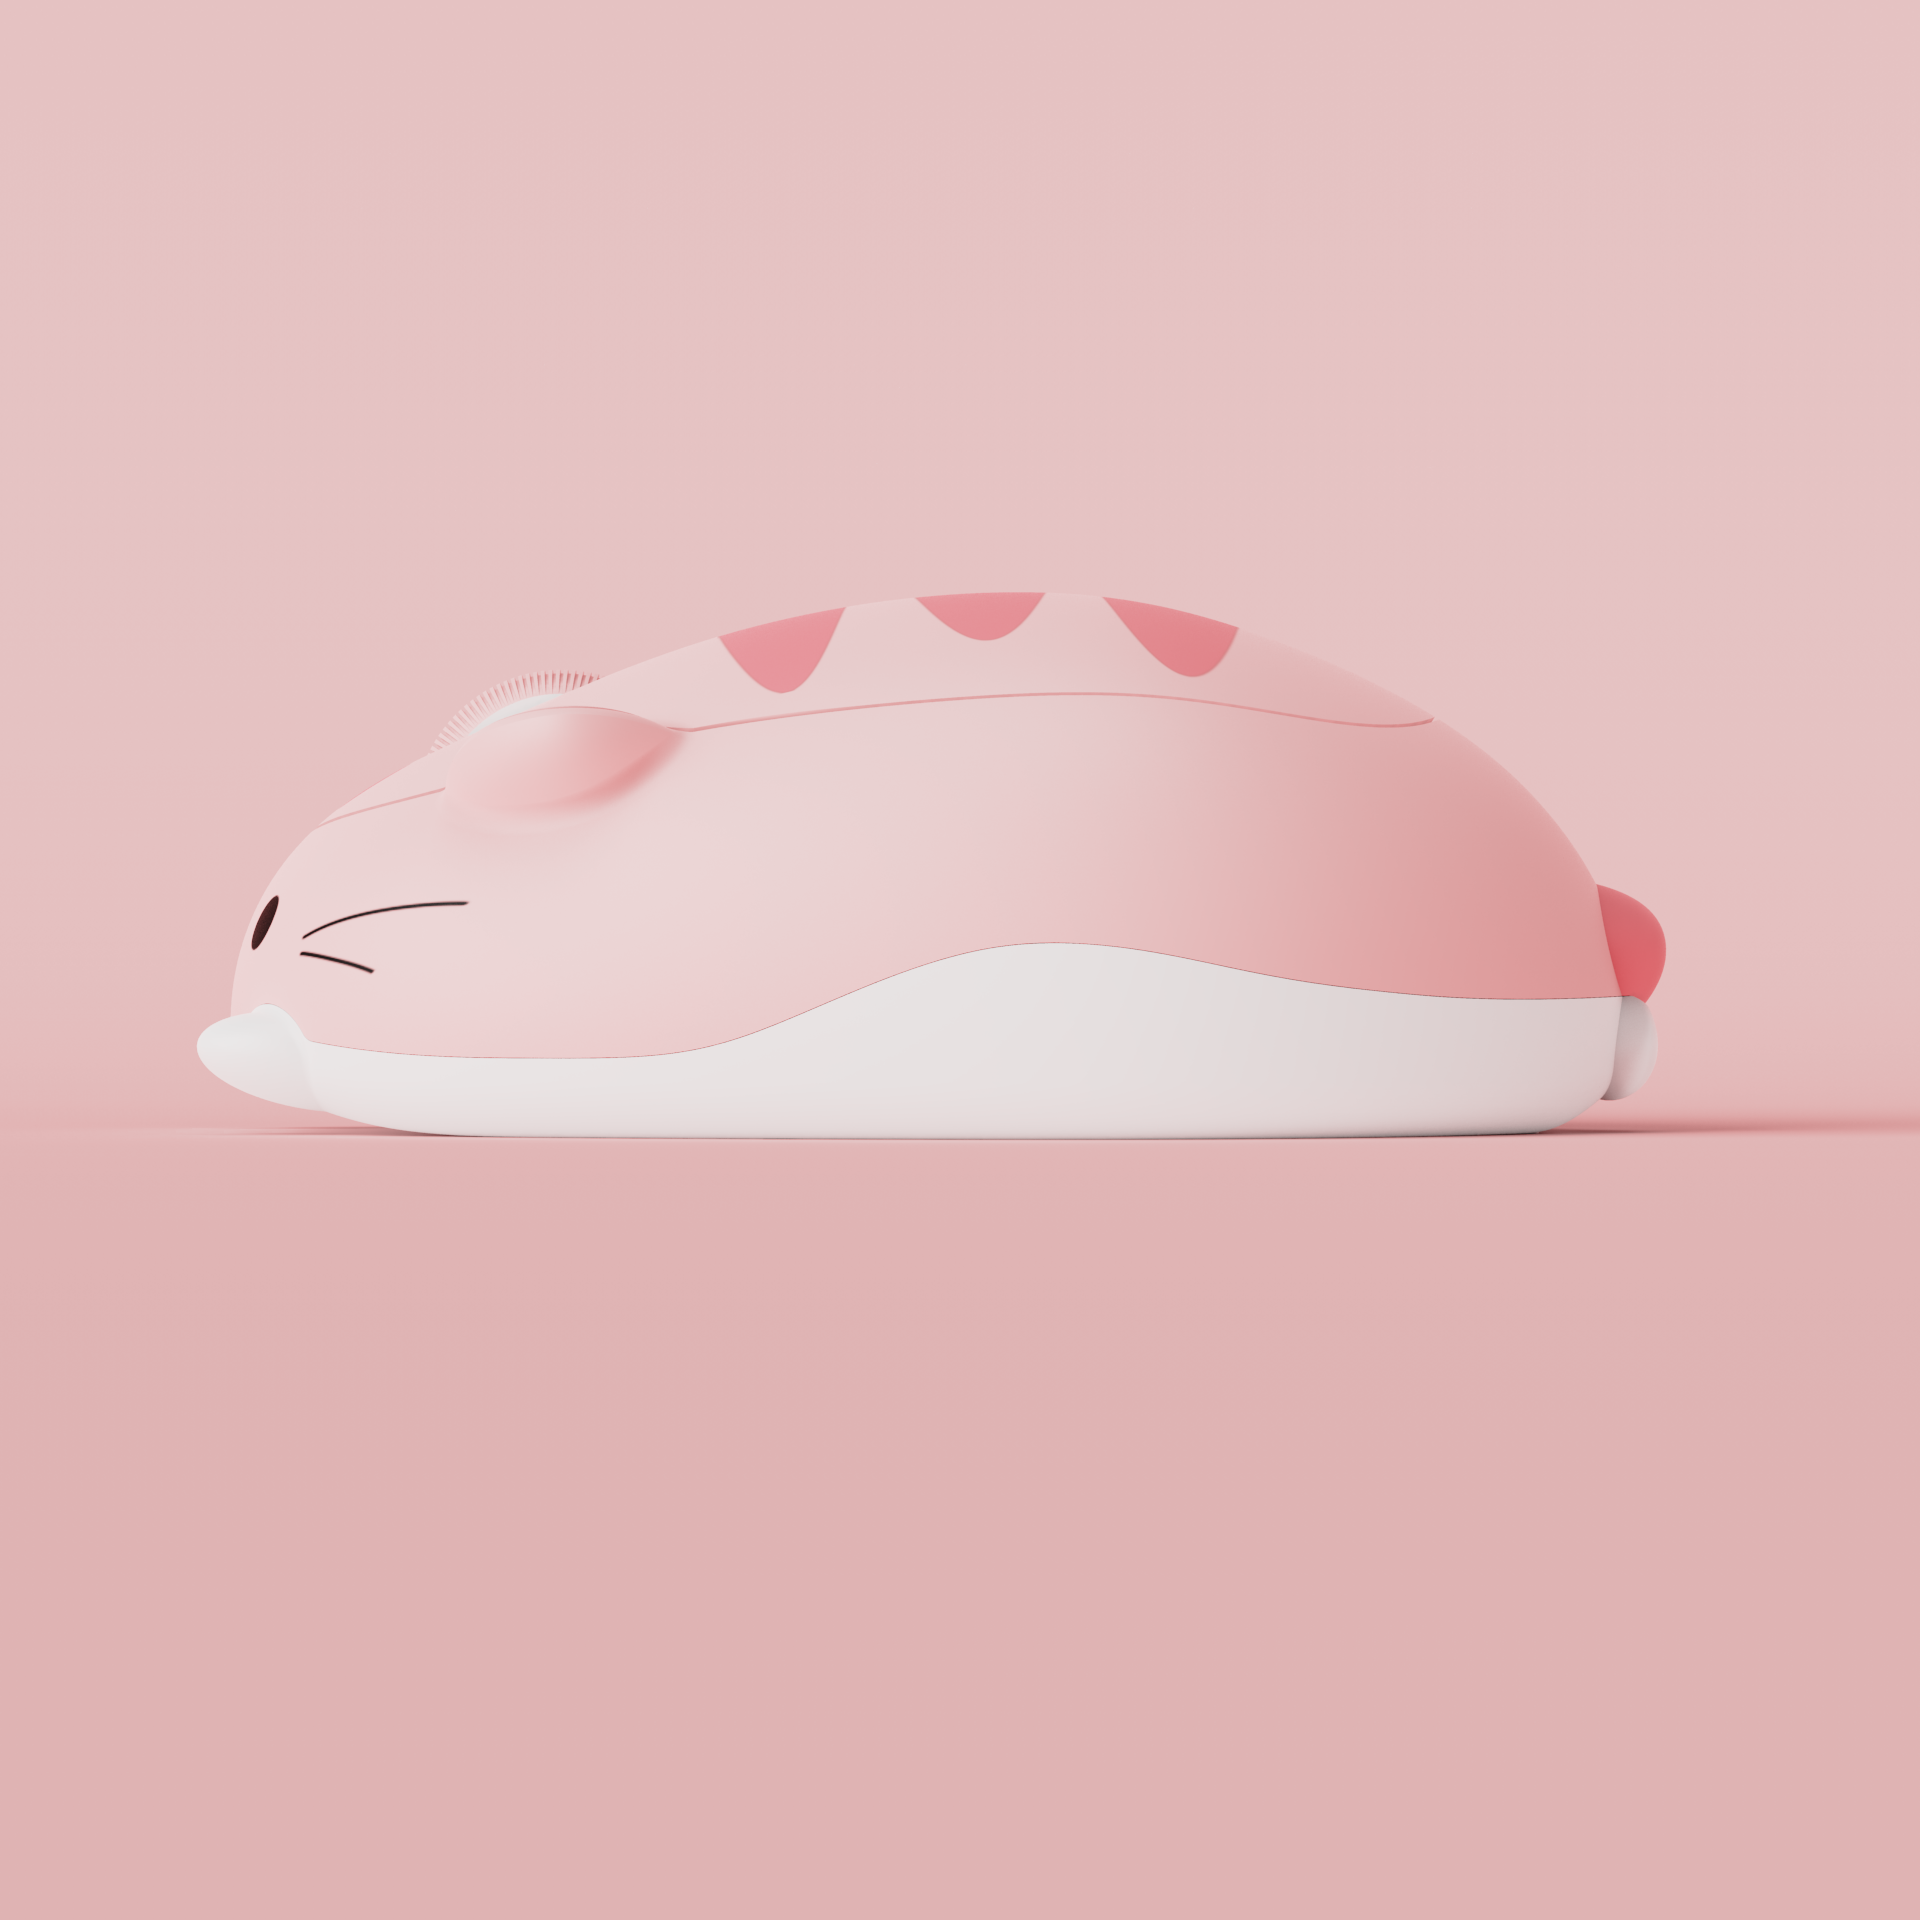 Akko Cat Theme Mouse